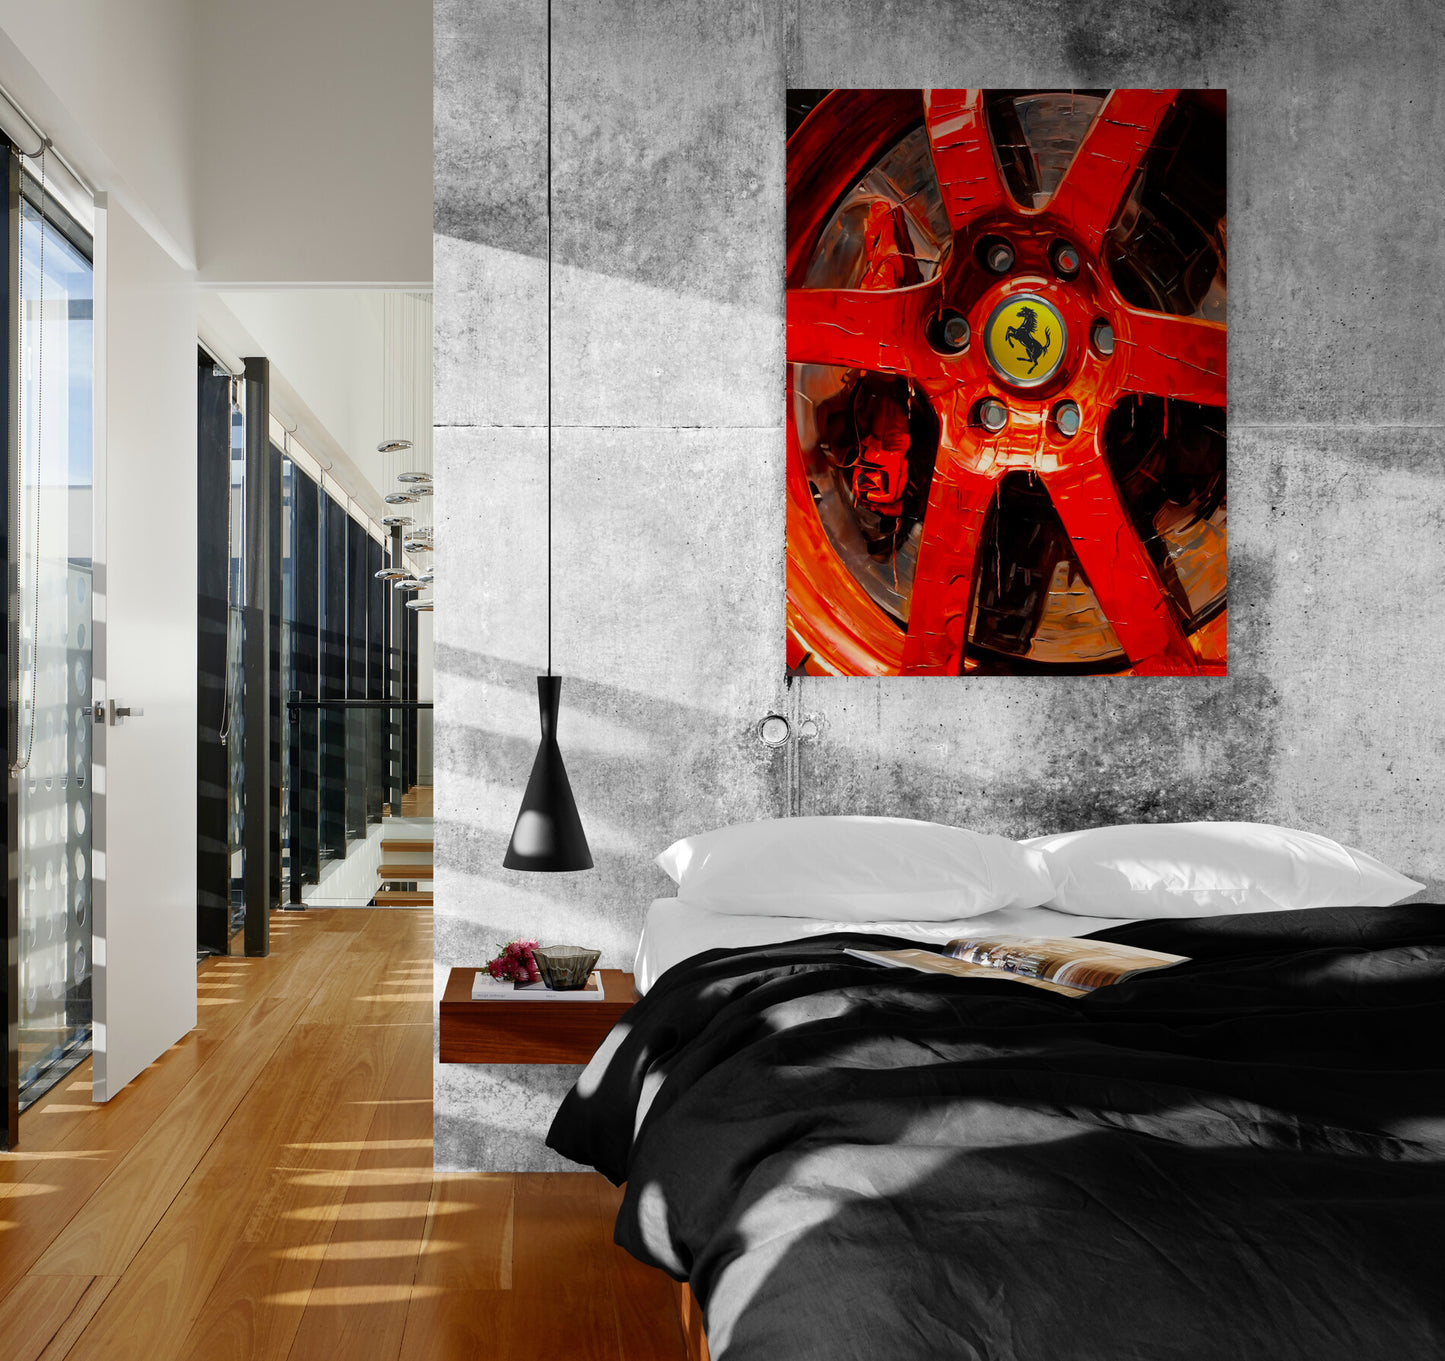 déco murale Ferrari rouge, touche audacieuse à une chambre masculine de style industriel et loft.